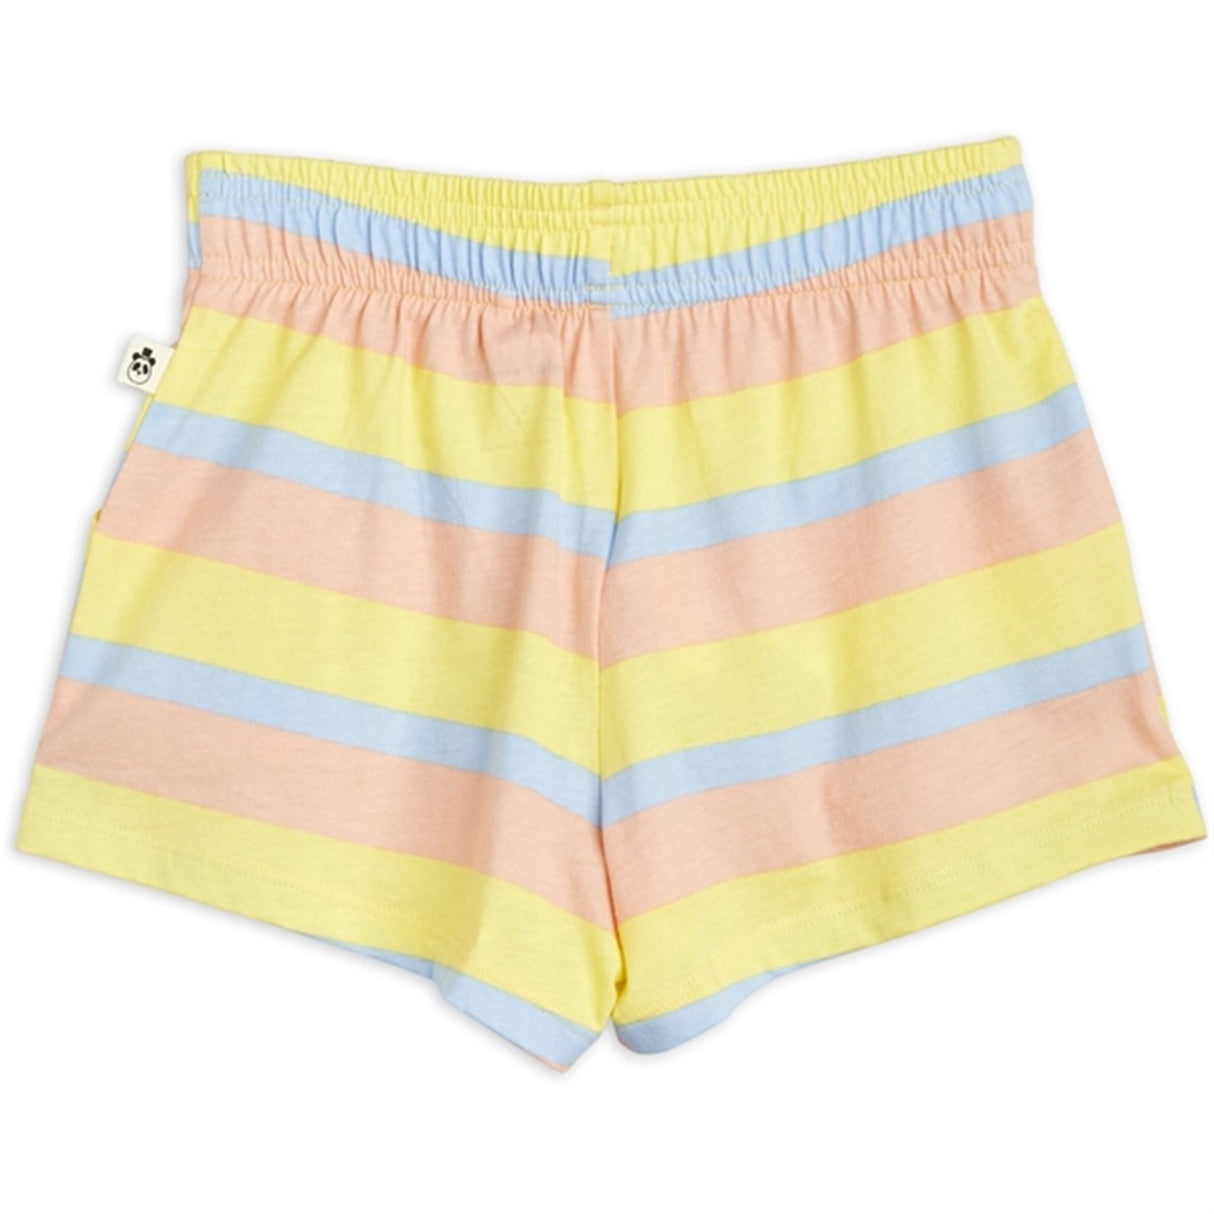 Mini Rodini Pastel Stripe Shorts Multi 4